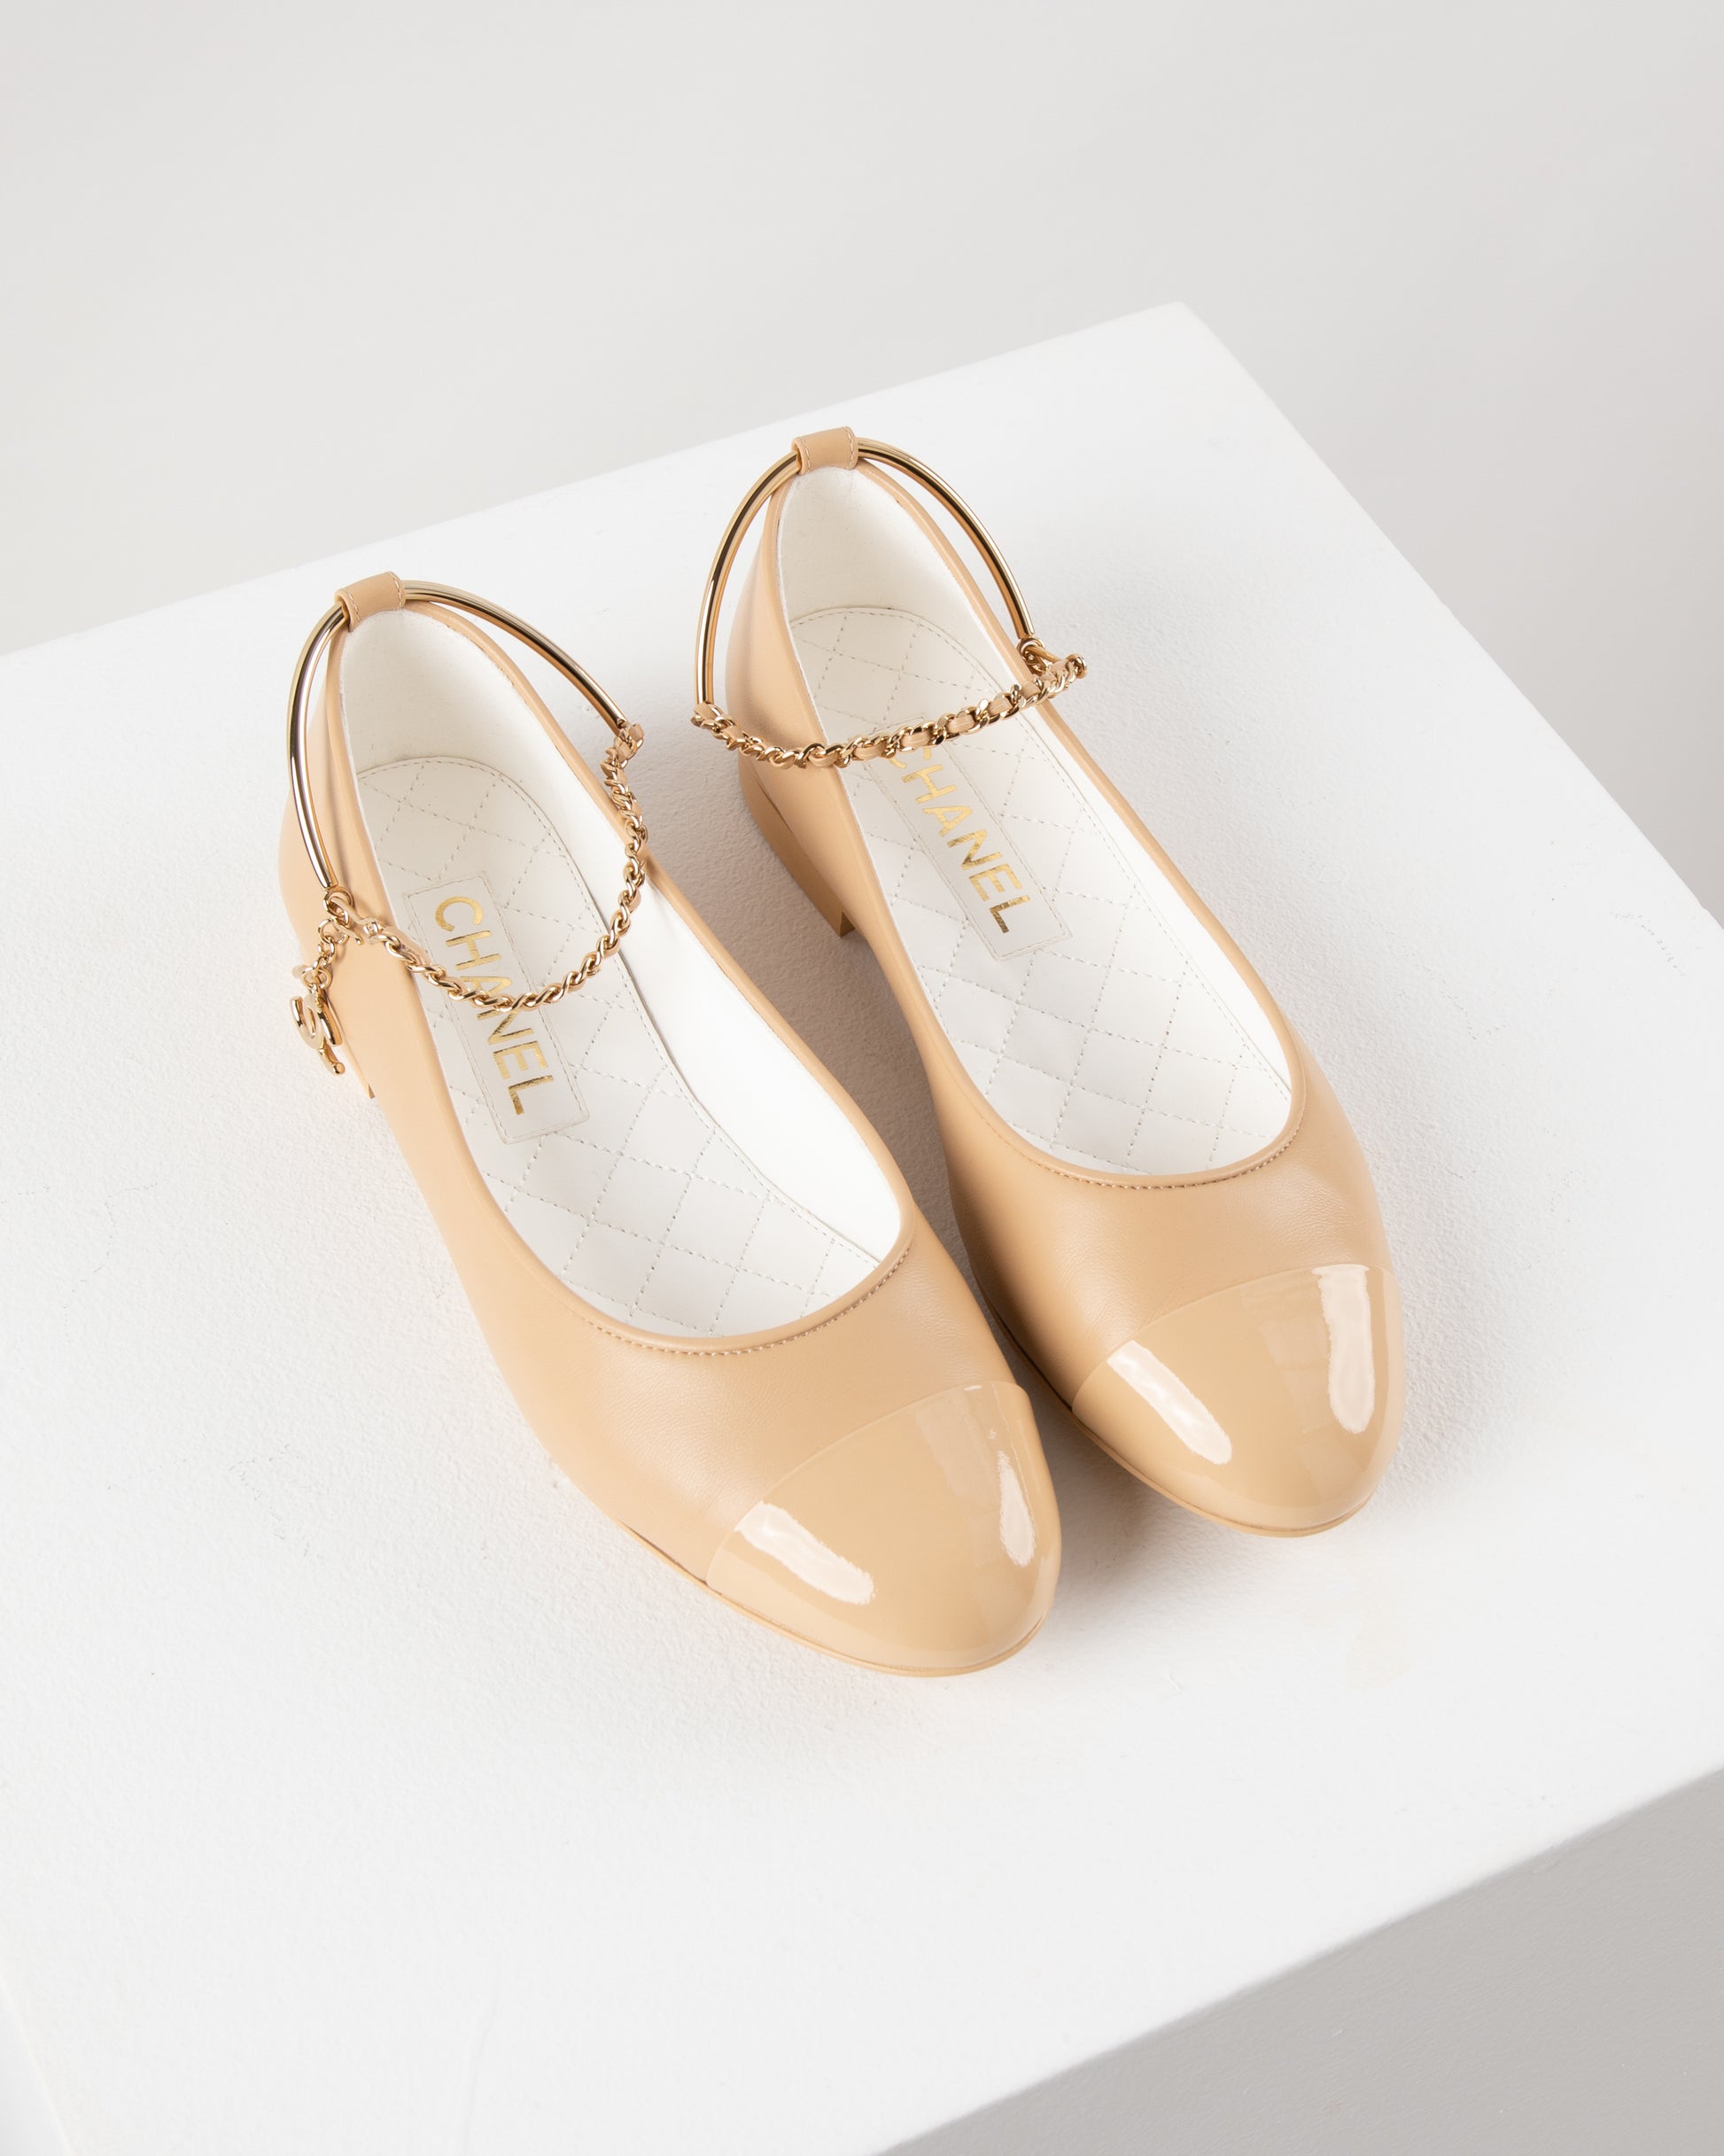 Chanel Ballerina Flat Shoes in Beige – Diamonds in Dubai